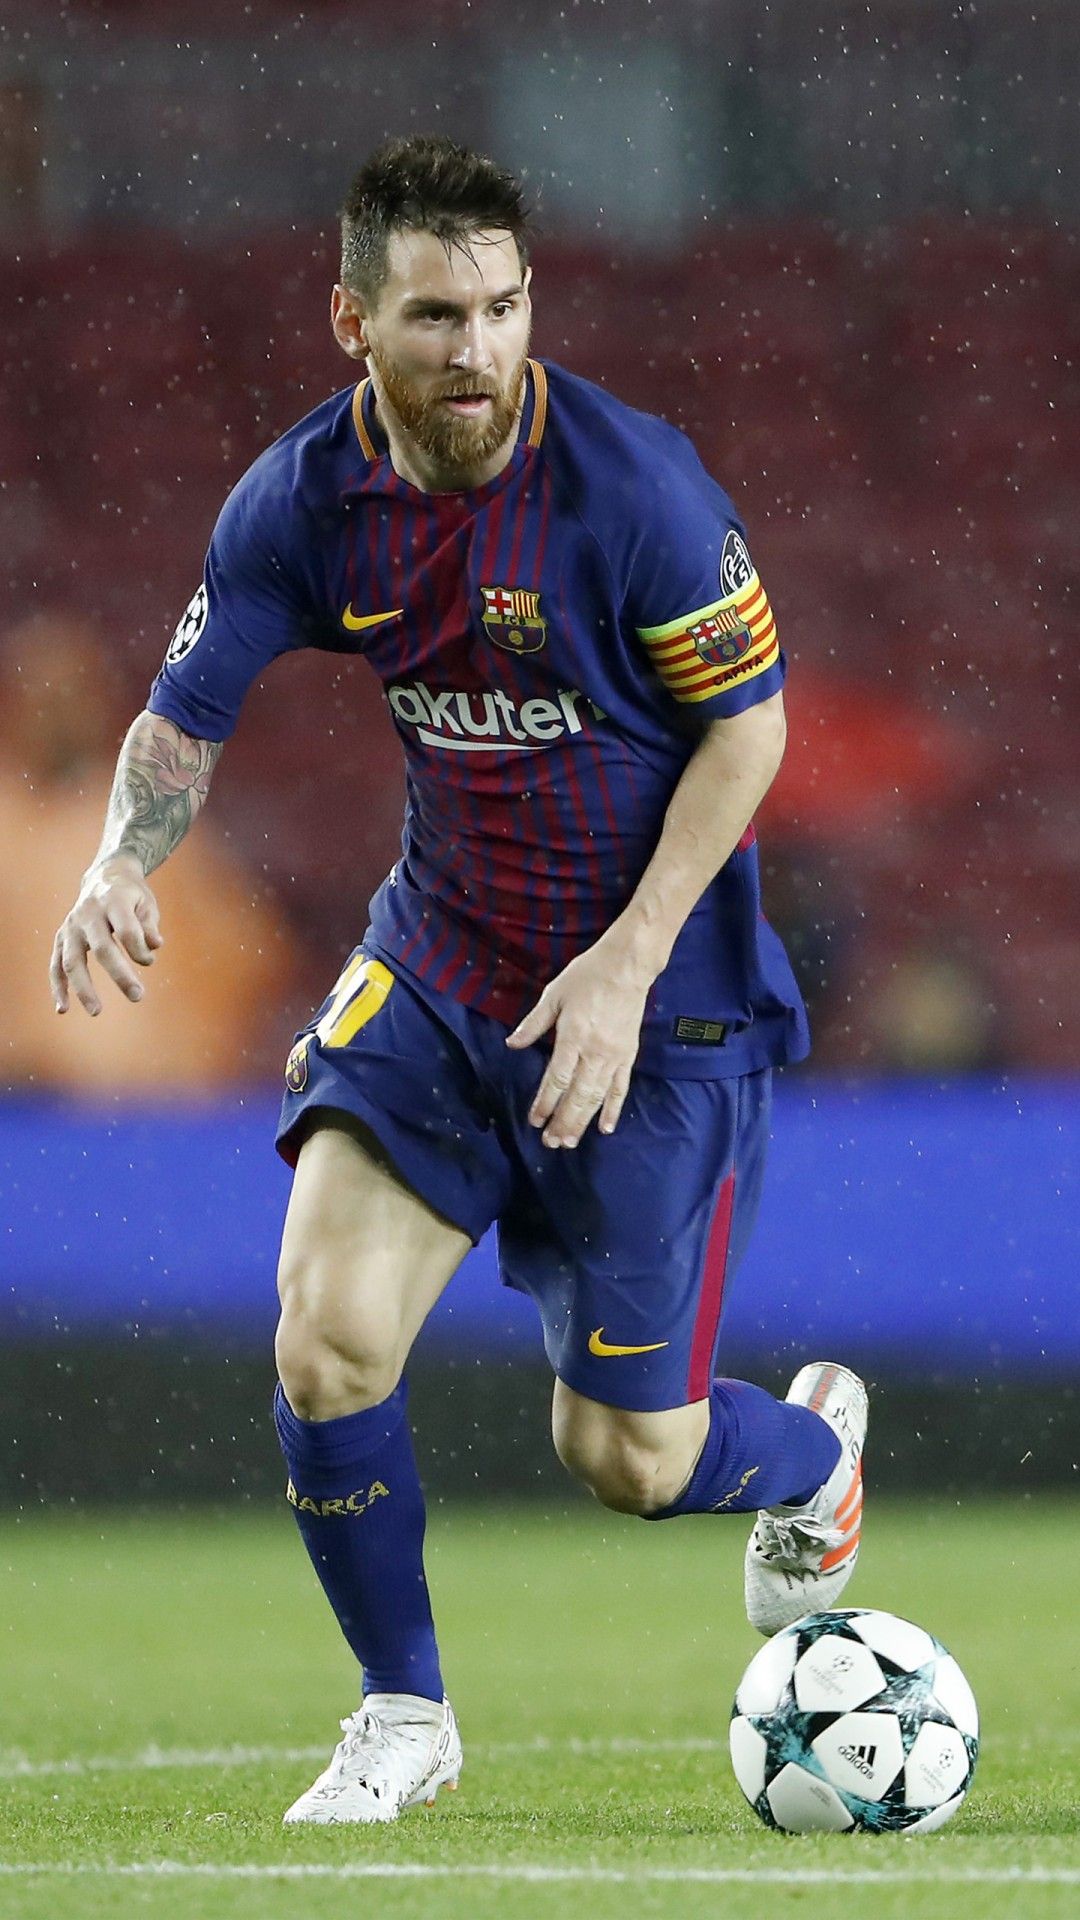 Bạn là fan hâm mộ của Messi? Thì hãy cập nhật những bức ảnh nền HD về chủ đề Messi trên iPhone của mình. Với độ phân giải cao và chất lượng hình ảnh tuyệt vời, bạn sẽ có thể ngắm nhìn Messi trên chiếc điện thoại mà mình yêu thích. Hãy để Messi trở thành người bạn đồng hành đặc biệt của bạn nhé!